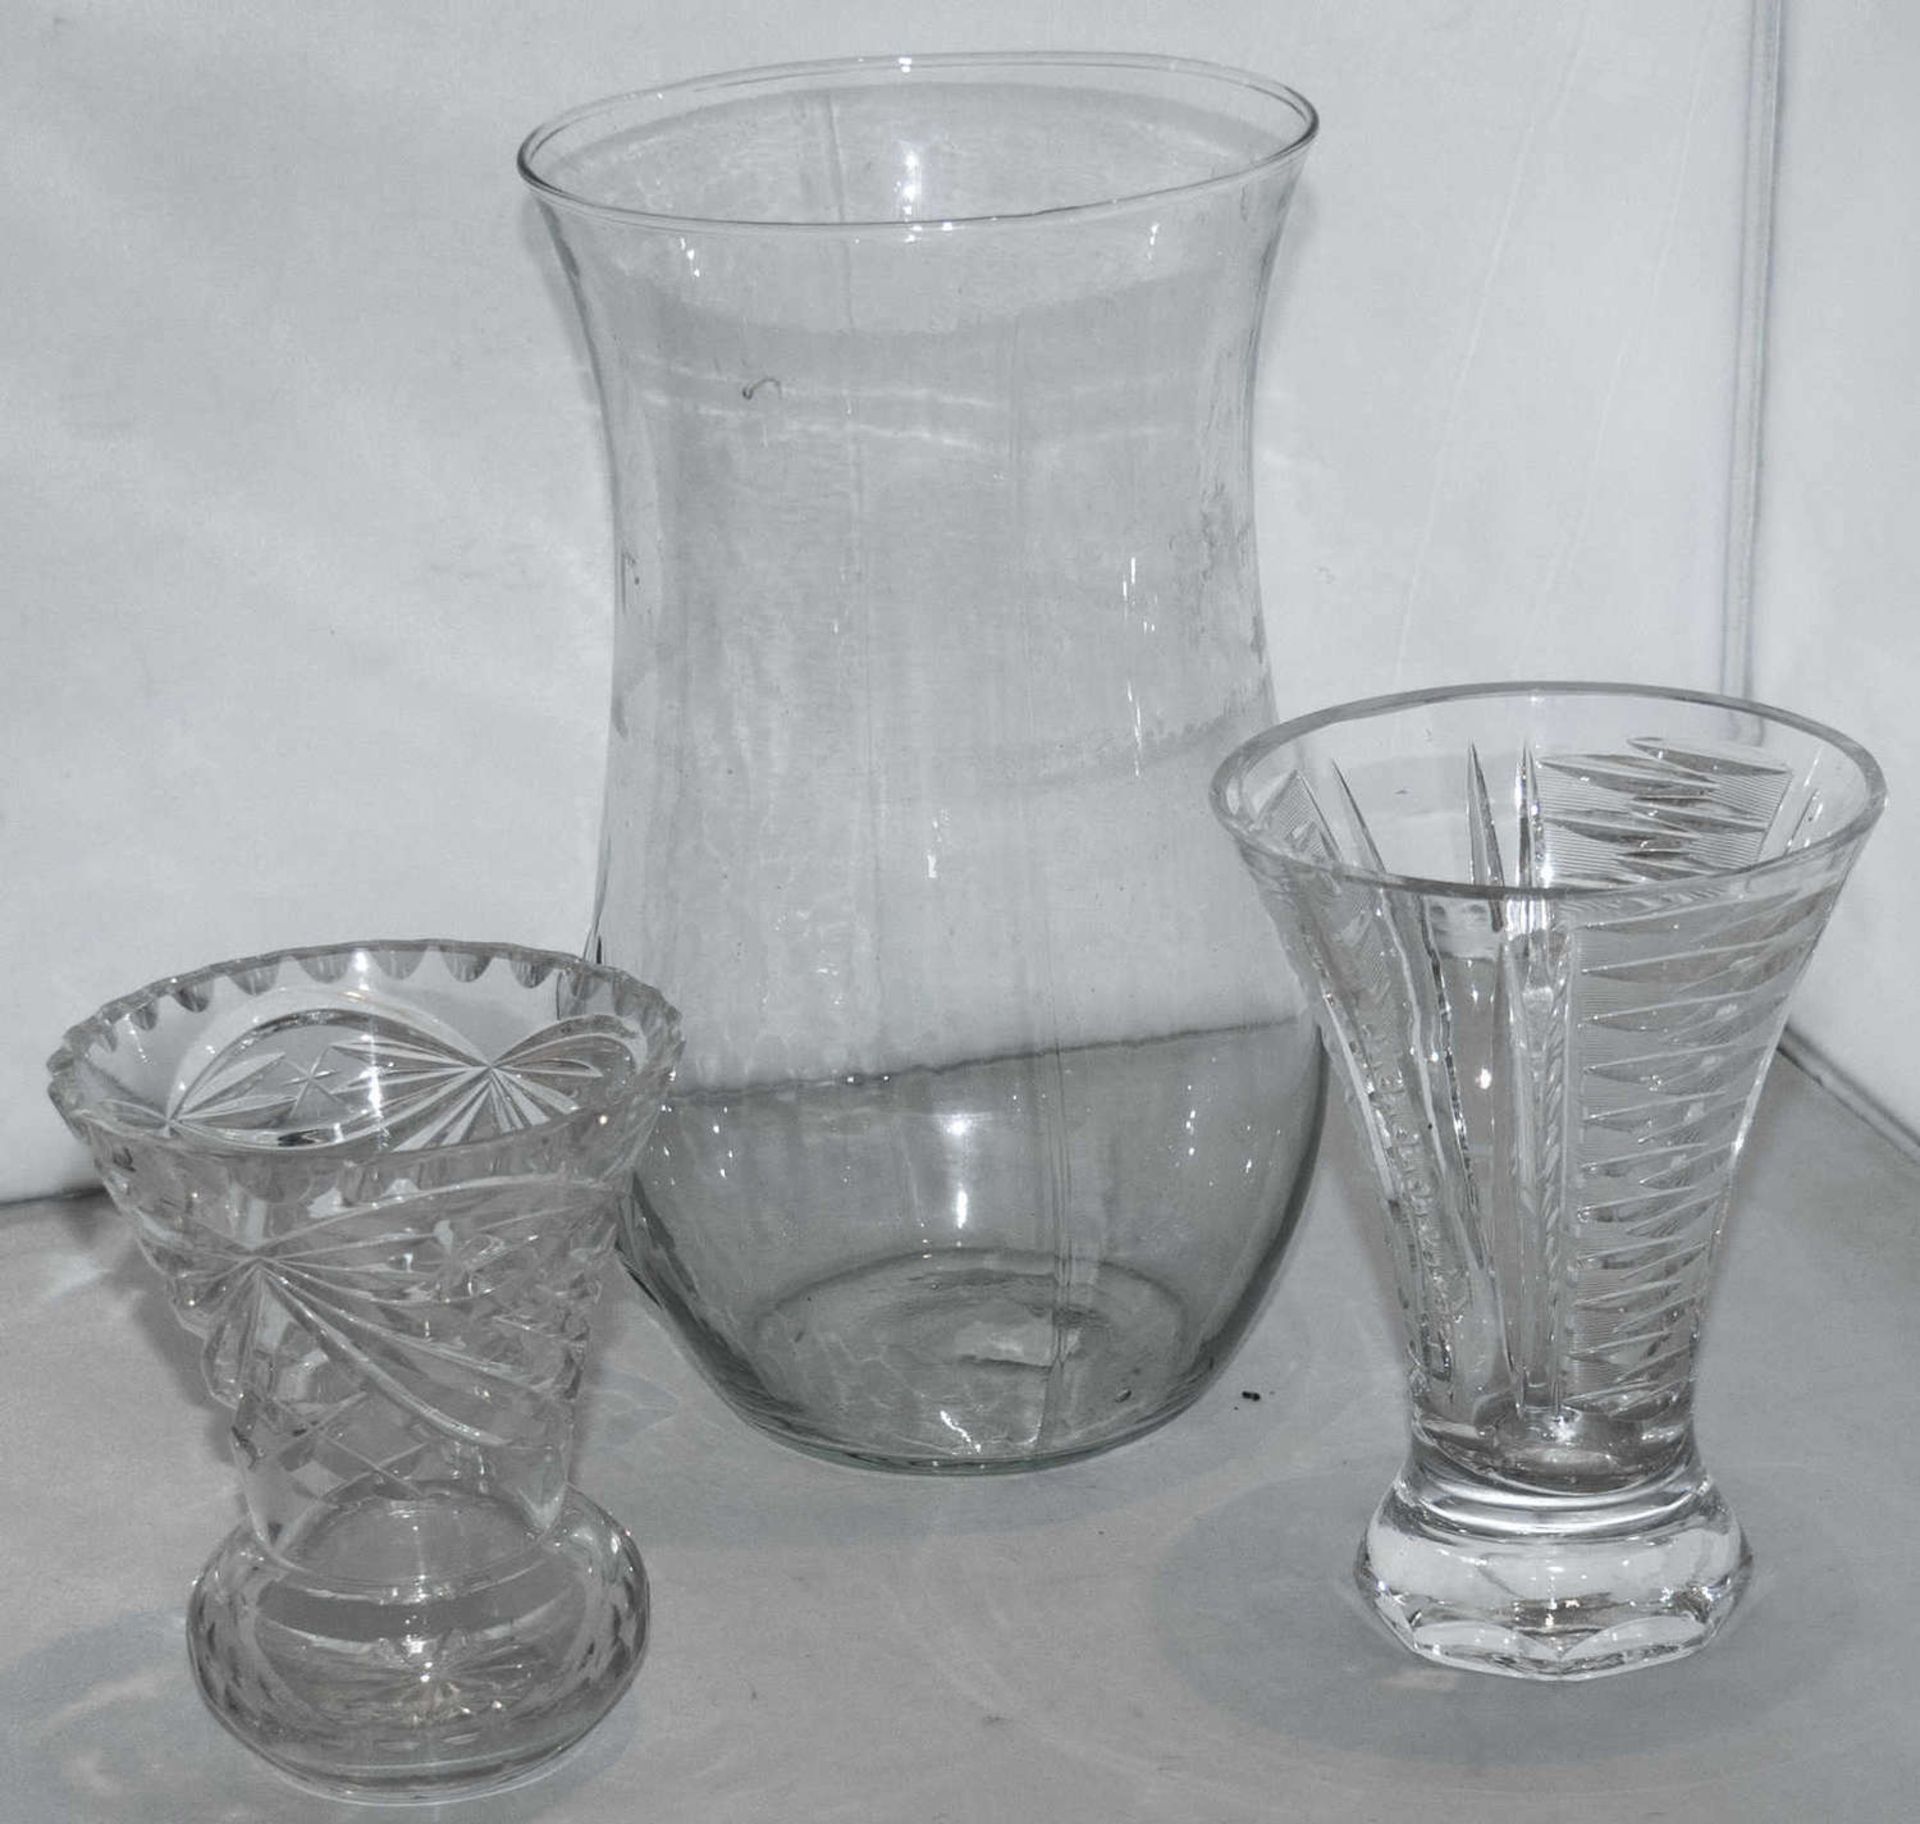 Konvolut Glasvasen, Kristall / Glas, insgesamt 6 Stück. Dazu ein Kerzenständer, Glas. - Bild 2 aus 2